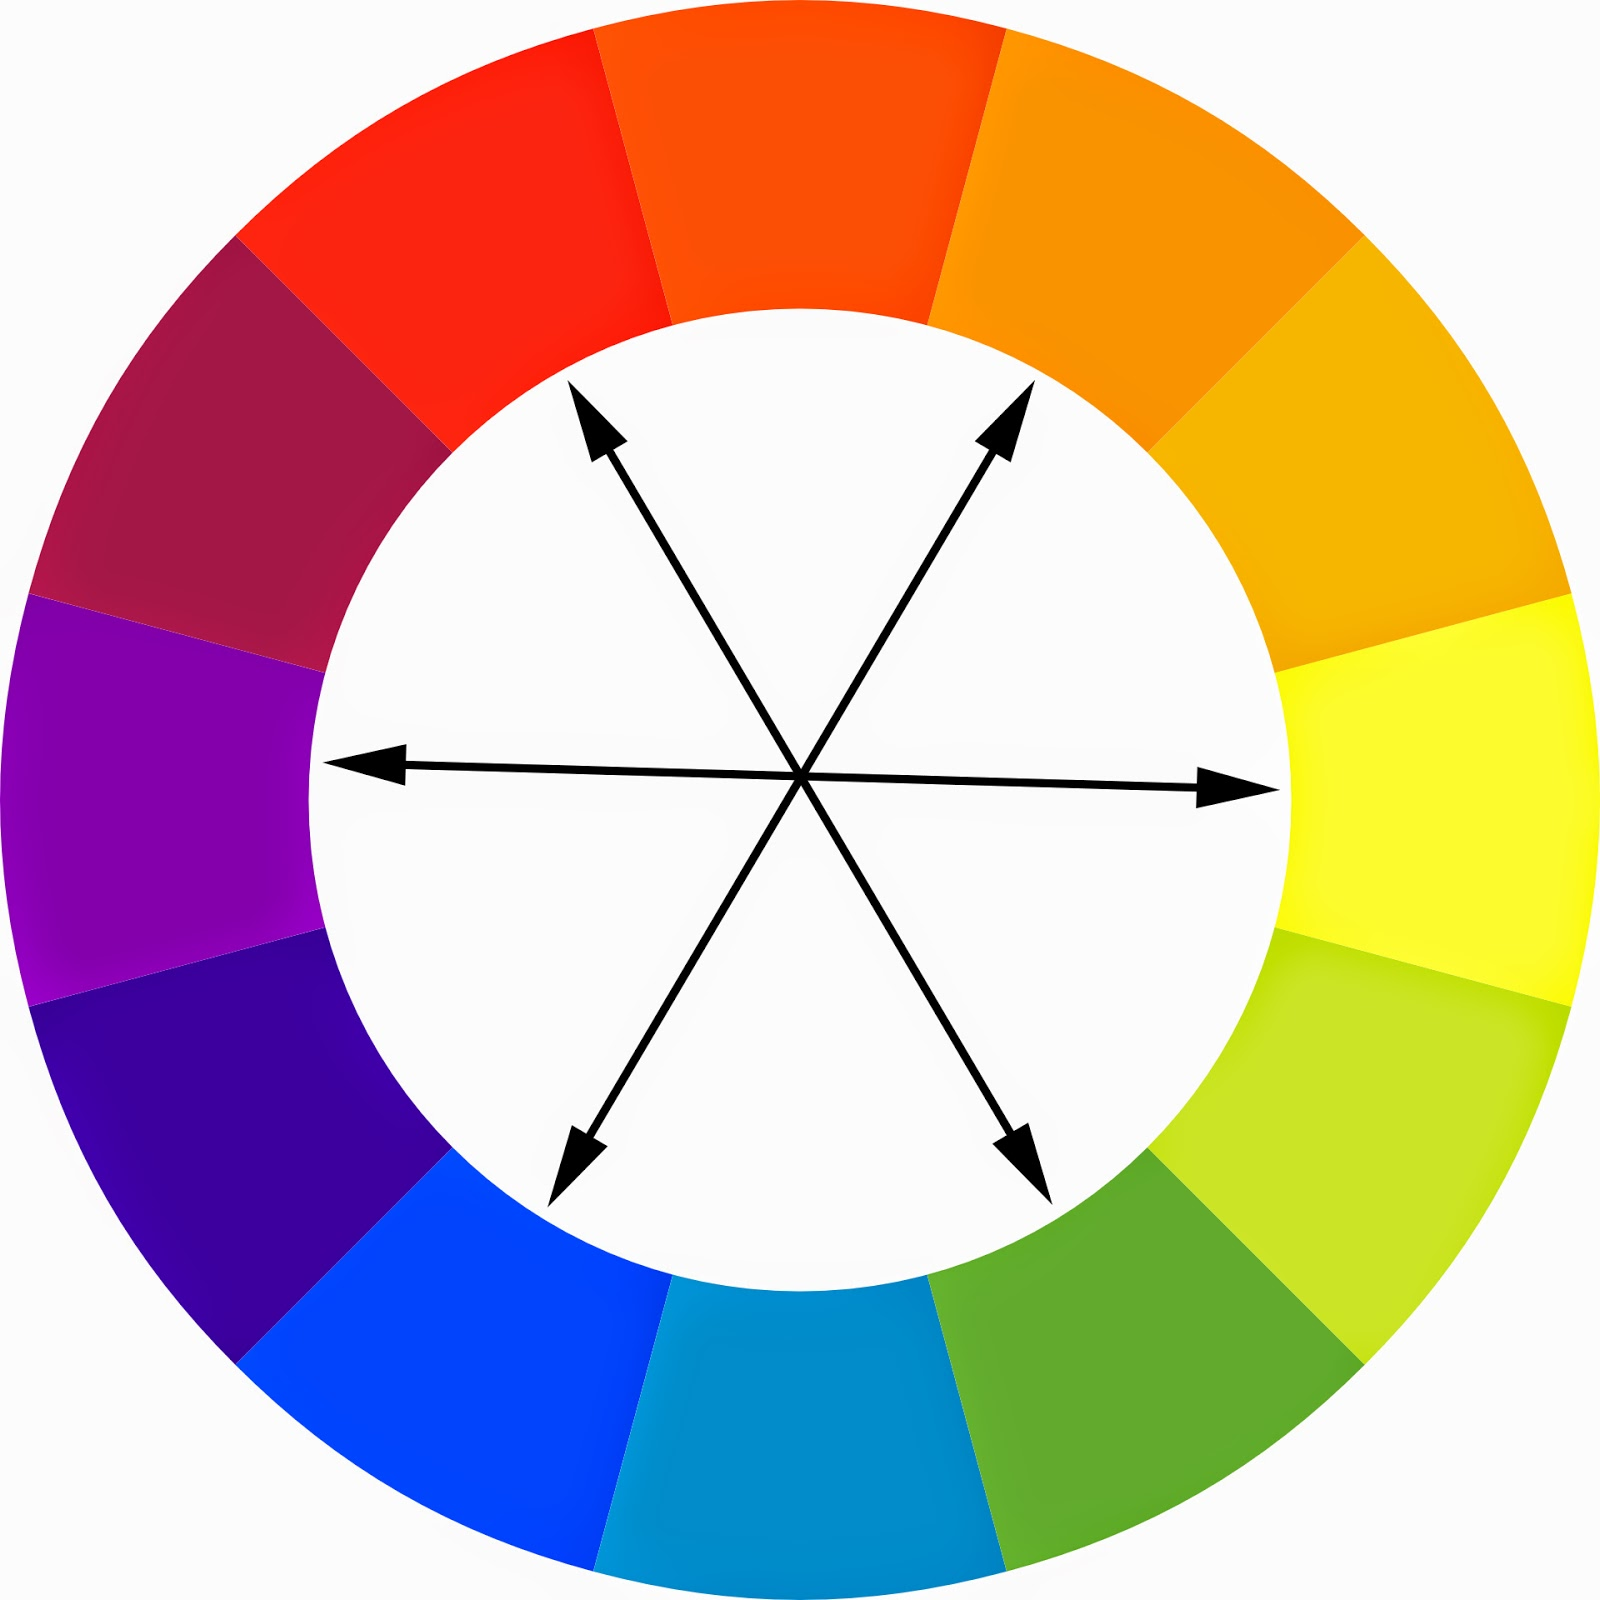 Каким цветом можно к. Цветовой круг комплиментарные цвета цвета. Цветовой круг Иттена комплиментарные цвета. Цветовой круг Иттена контрасты. Цветовой круг Иттена 12 цветов.